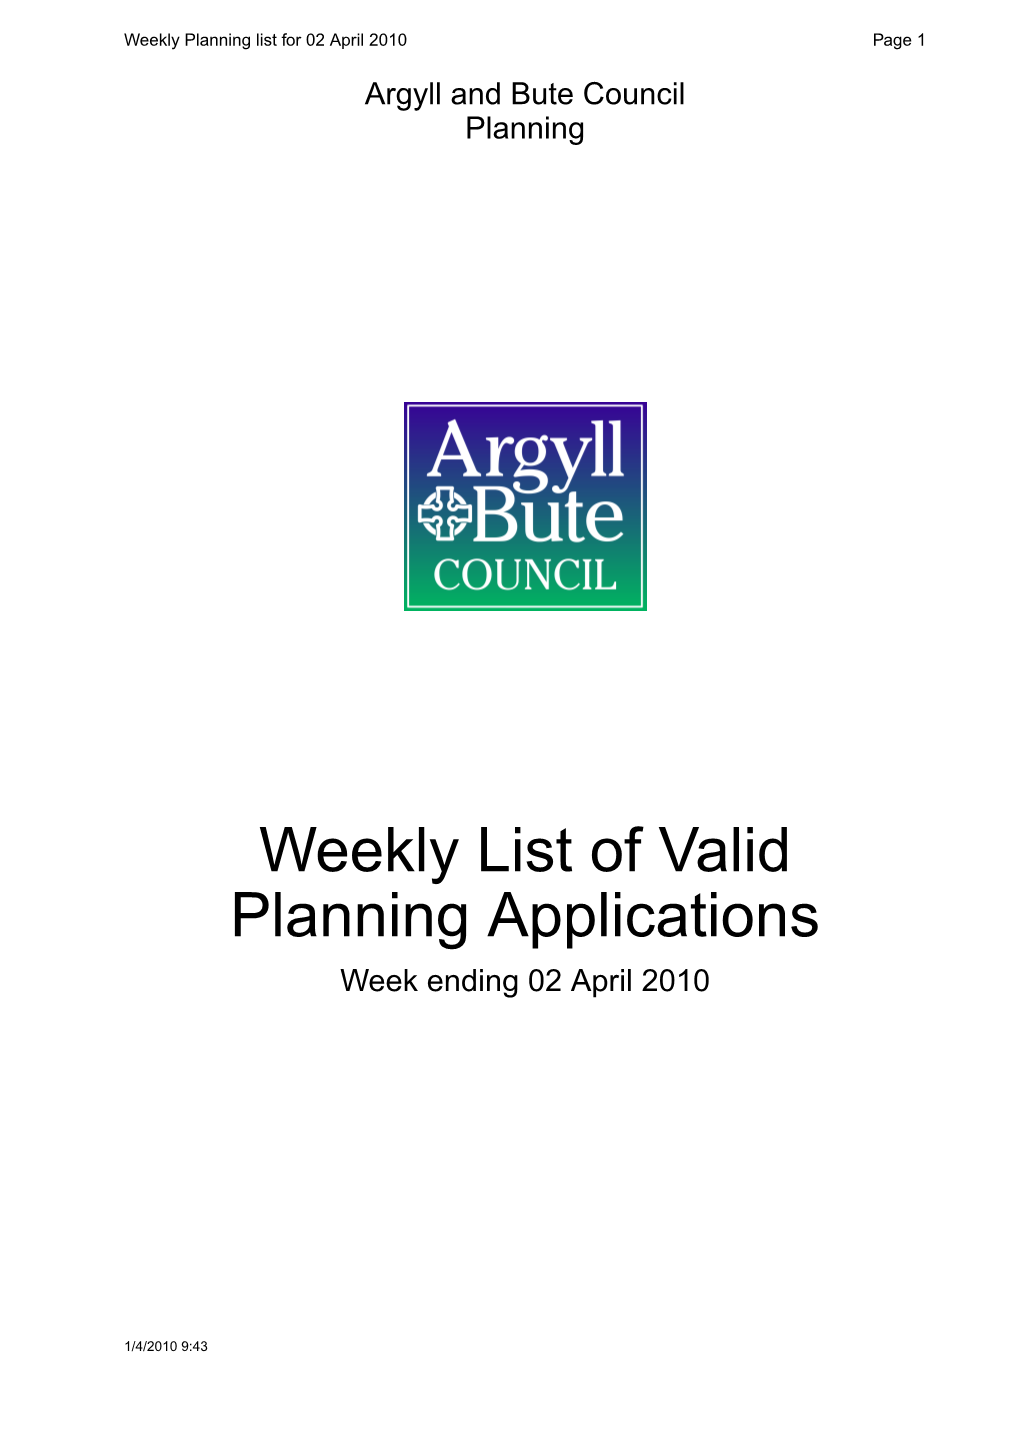 Weekly List of Valid Planning Applications Week Ending 02 April 2010